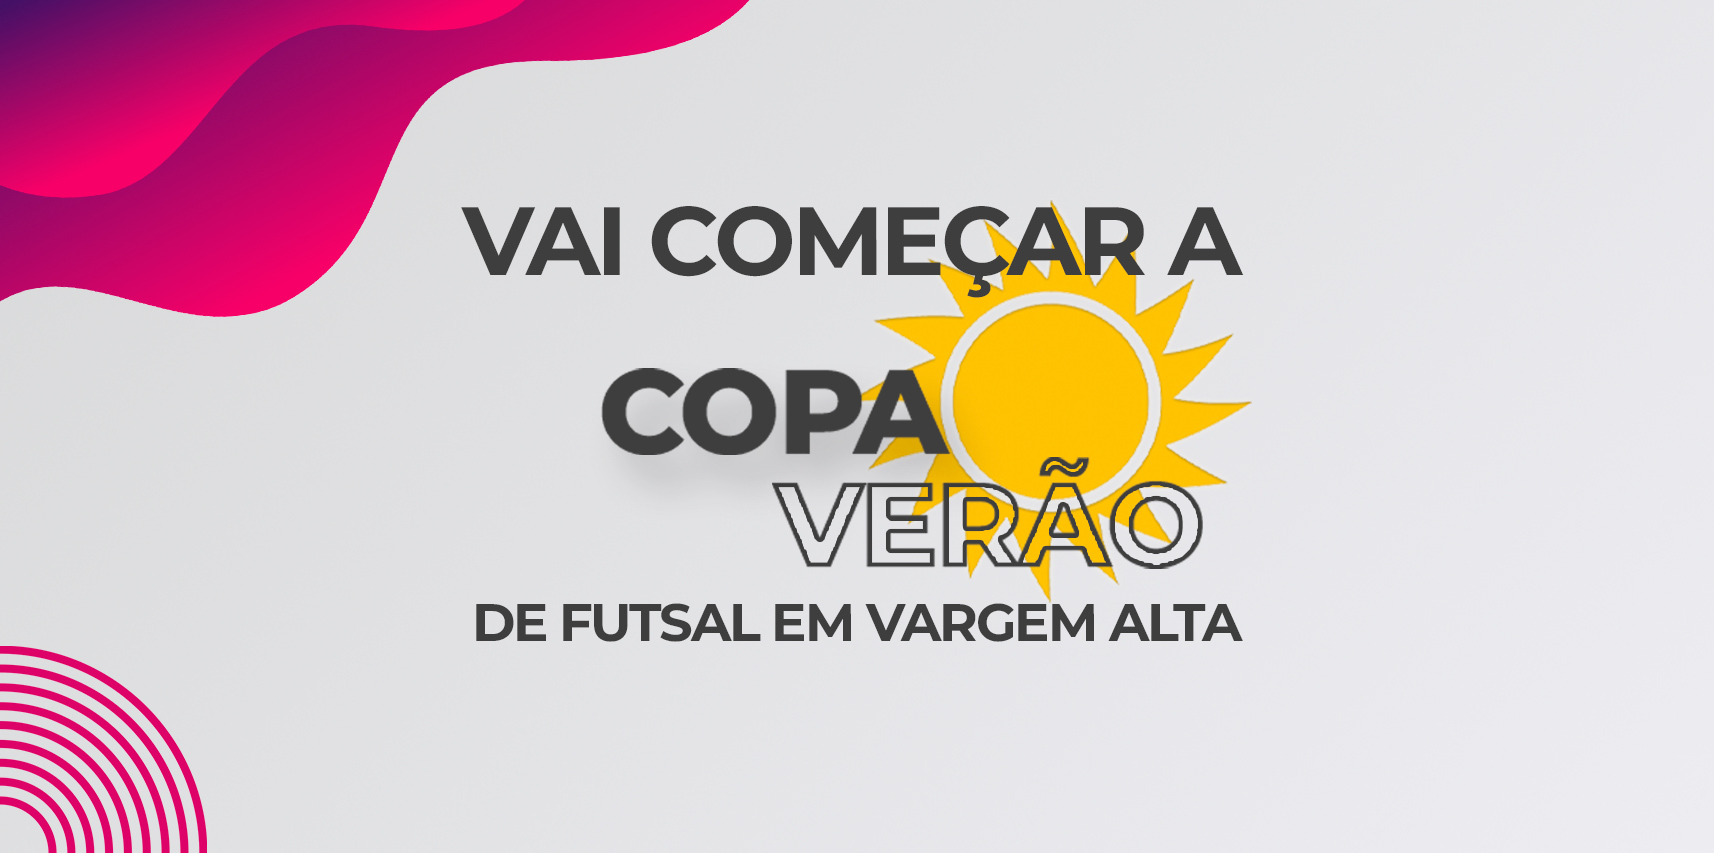 Vai começar a Copa Verão de Futsal de Vargem Alta